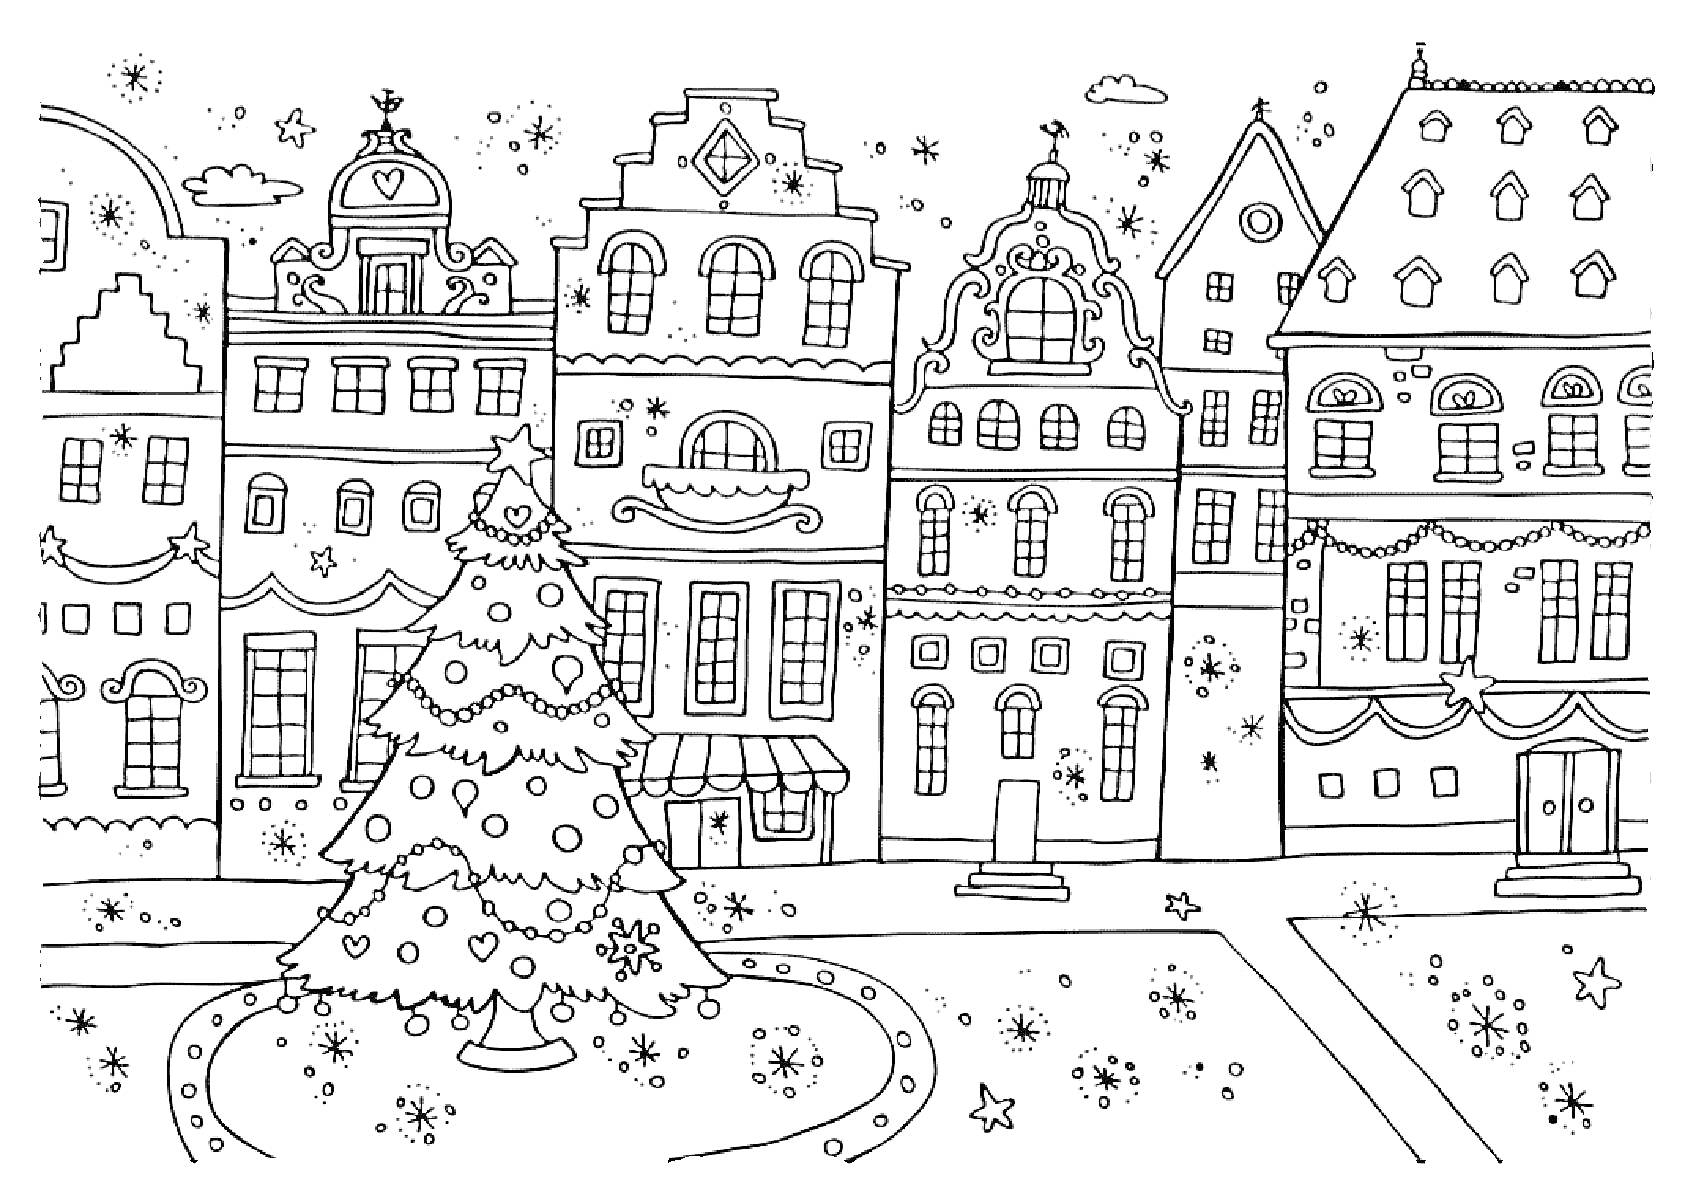 Раскраска Рождественский город с ёлкой и зданиями: украшенная ёлка, старинные здания, витрина с навесом, окна, двери, снежинки, звёзды, рождественские украшения